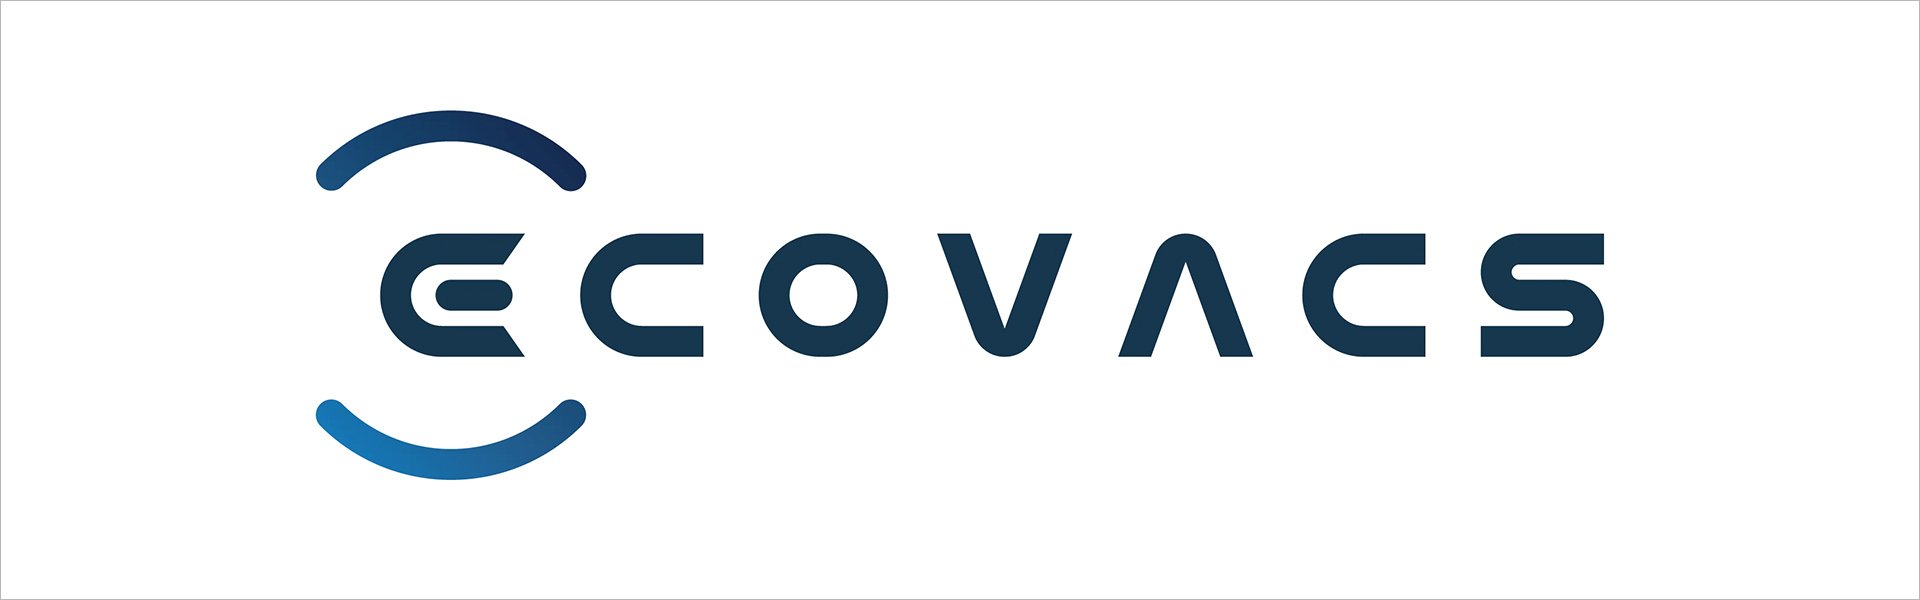 Ecovacs Winbot X ECOVACS